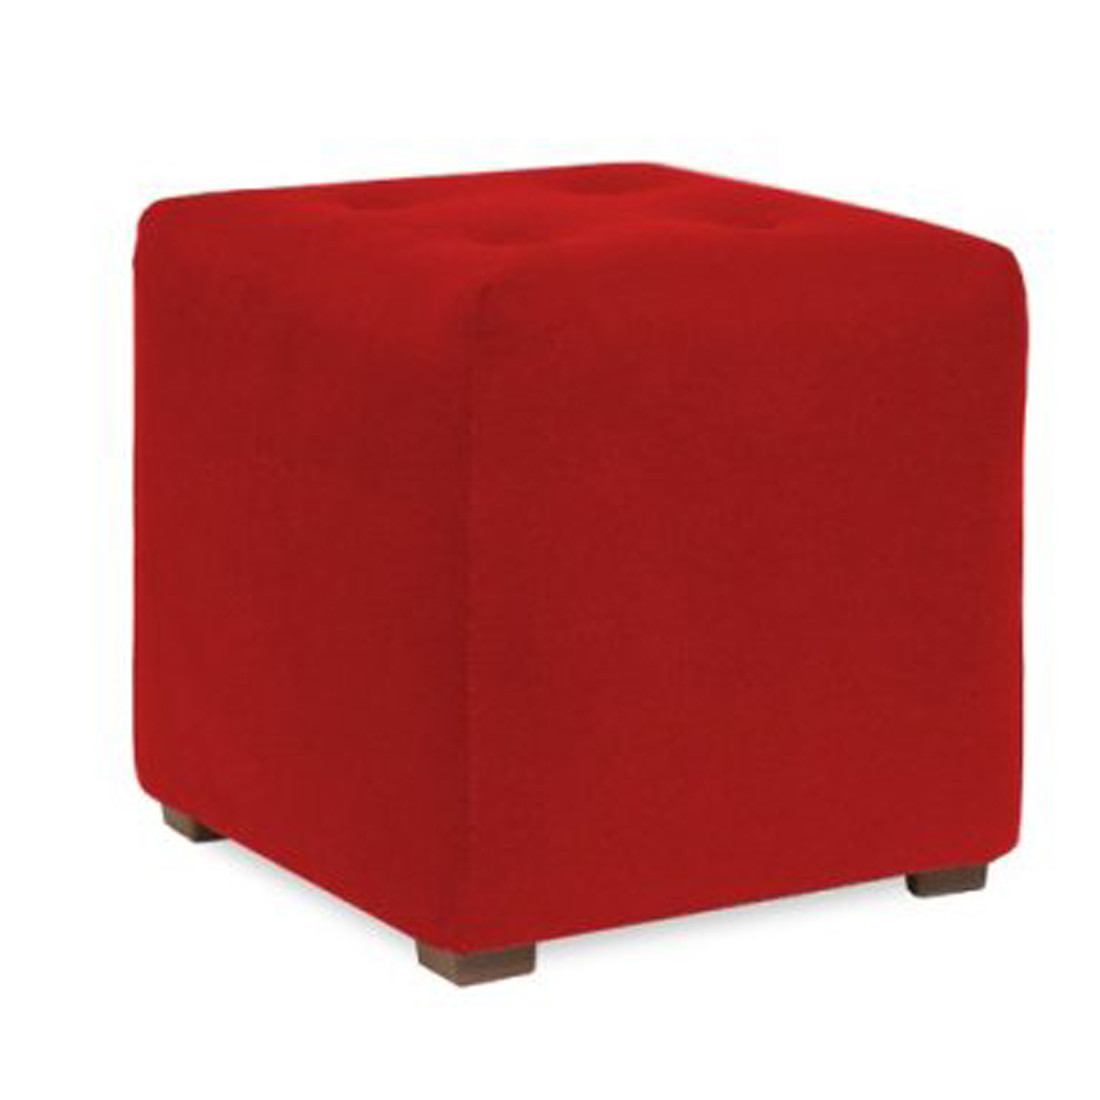 Red Sofa Piece